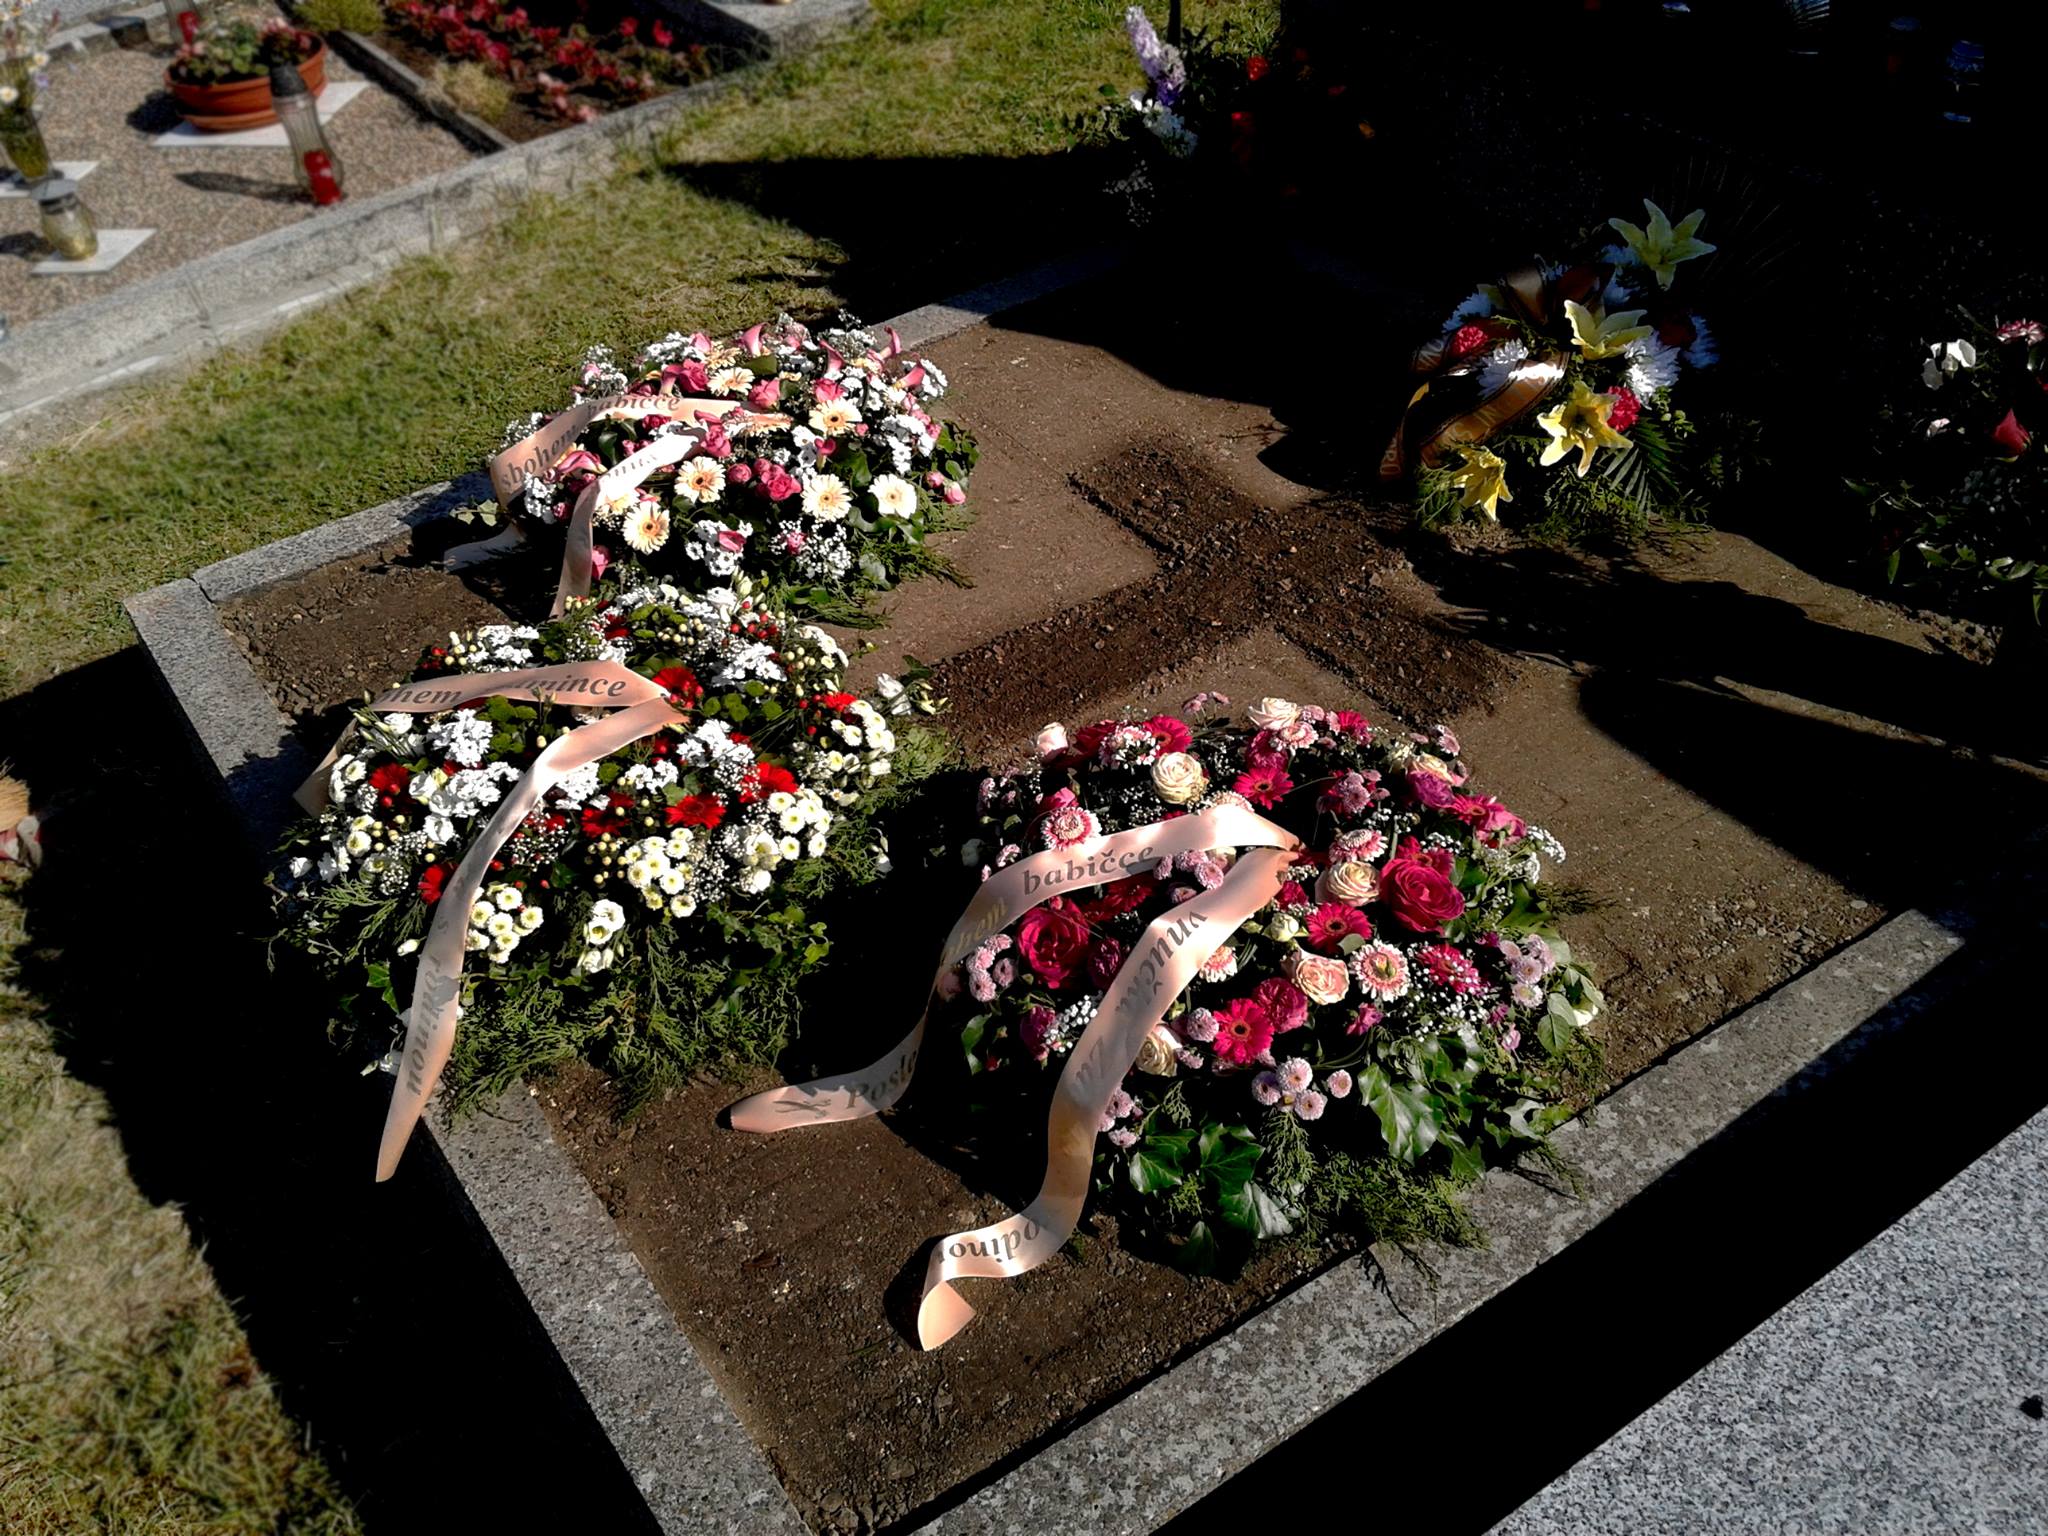 Jak zařídit pohřeb nebo úpravu zesnulých - pomůže Vám certifikovaná pohřební služba